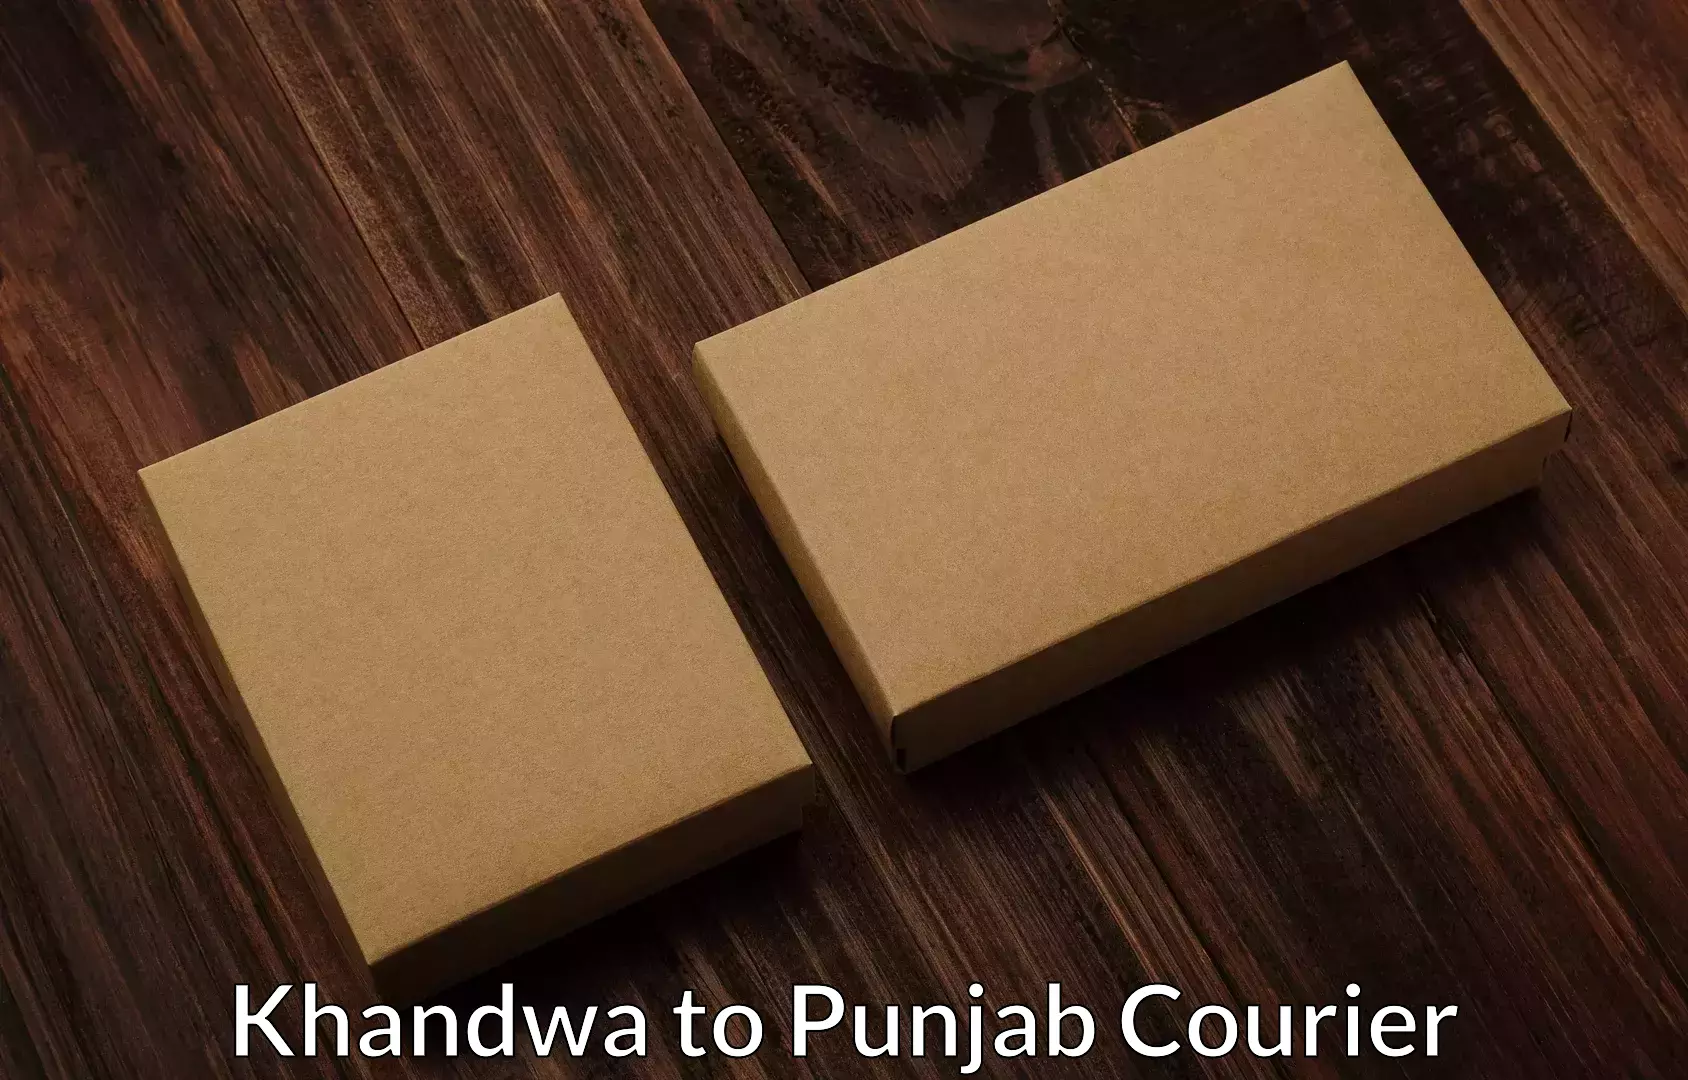 Home furniture moving Khandwa to Punjab